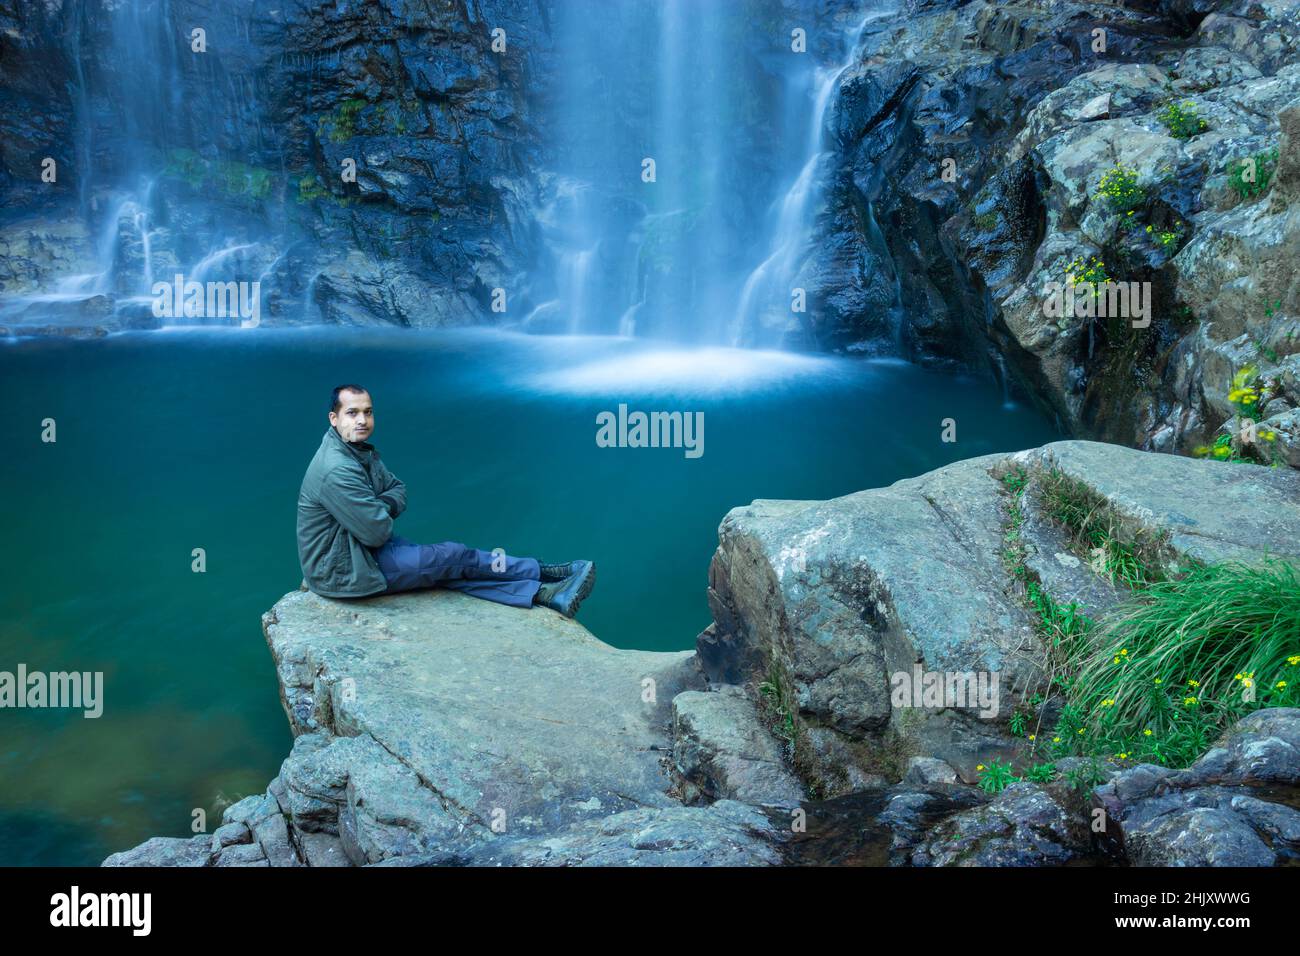 Der junge Mann am Wasserfall, der am Morgen vom Berg fällt, mit einer ruhigen, unscharfen Wasseroberfläche, wurde beim Thangsning Fall shillong meghalaya india aufgenommen. Stockfoto